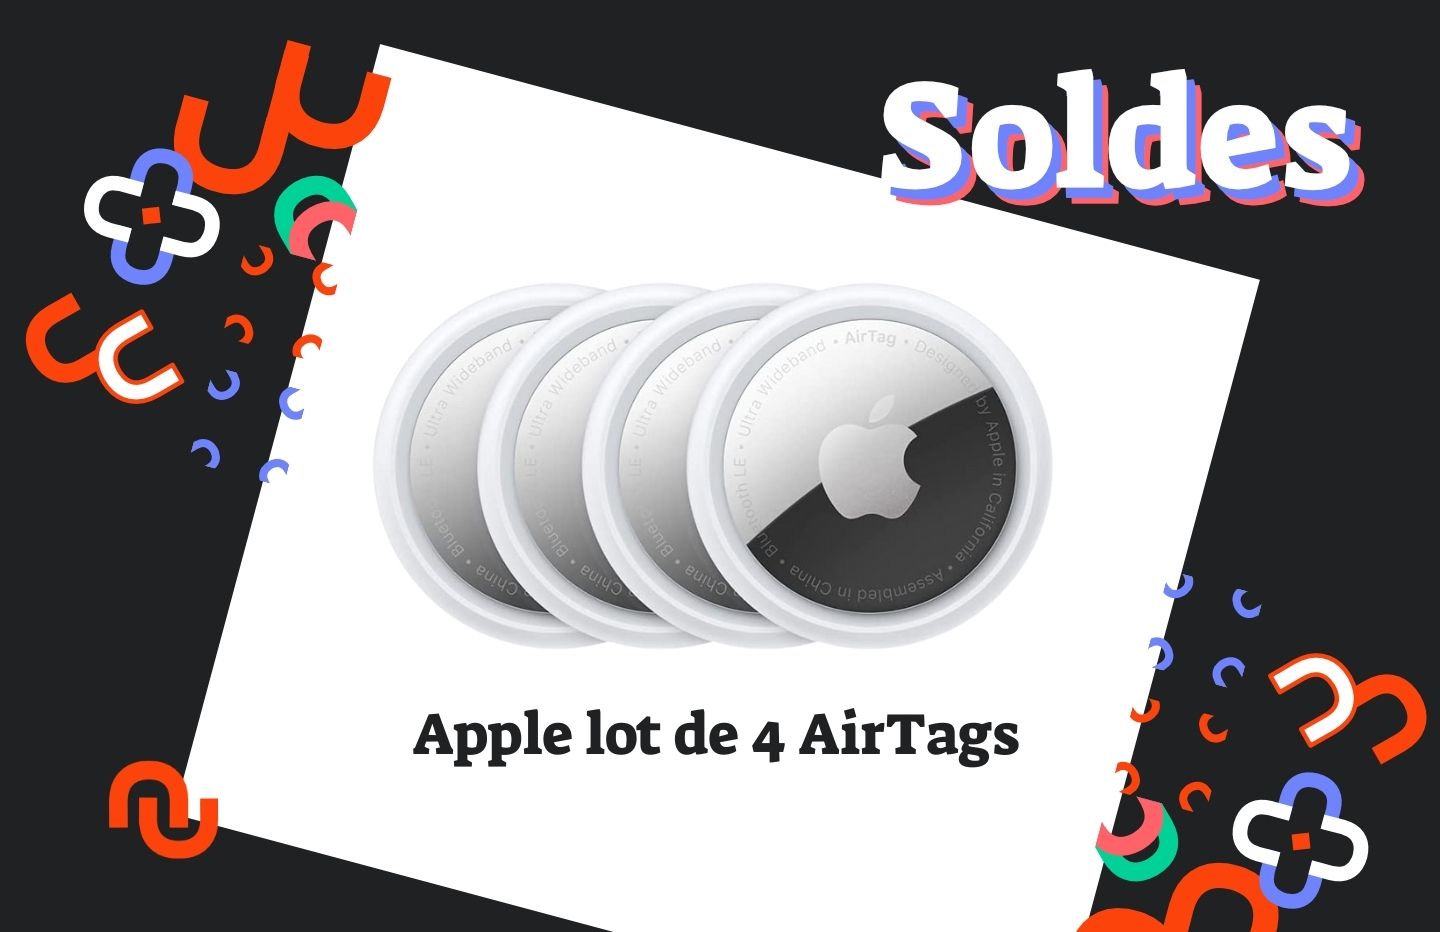 Rarement en promotion, le lot de 4 Apple AirTags est à prix réduit pour les  soldes - Numerama